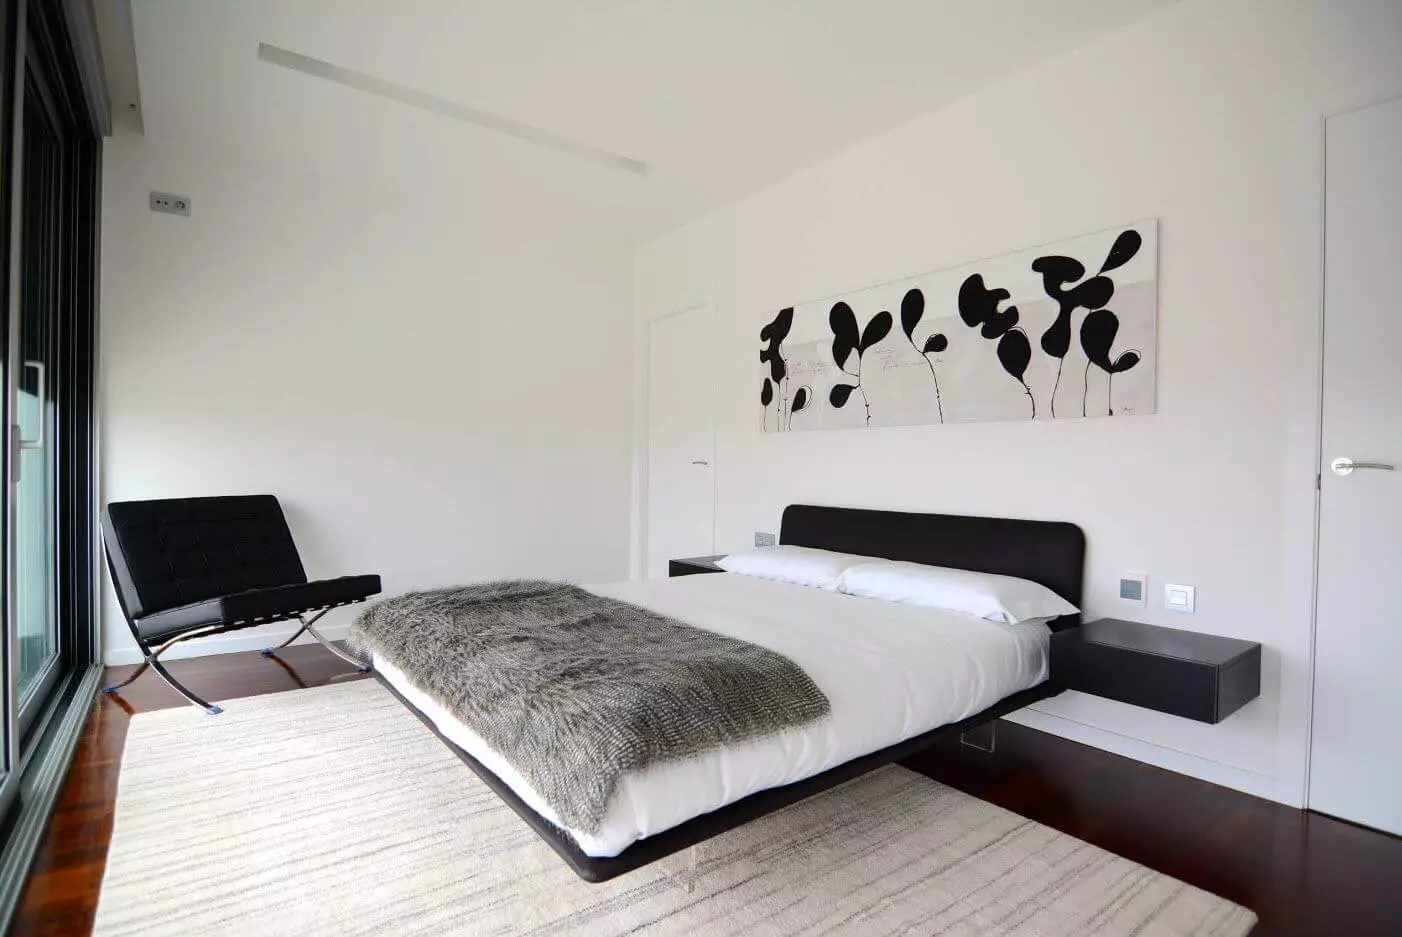 غرف نوم صغيرة (166 صورة): تصميم الأفكار الداخلية لغرفة صغيرة. كيفية تقديم وتجهيز غرف النوم الصغيرة؟ أفكار مثيرة للاهتمام 9841_119